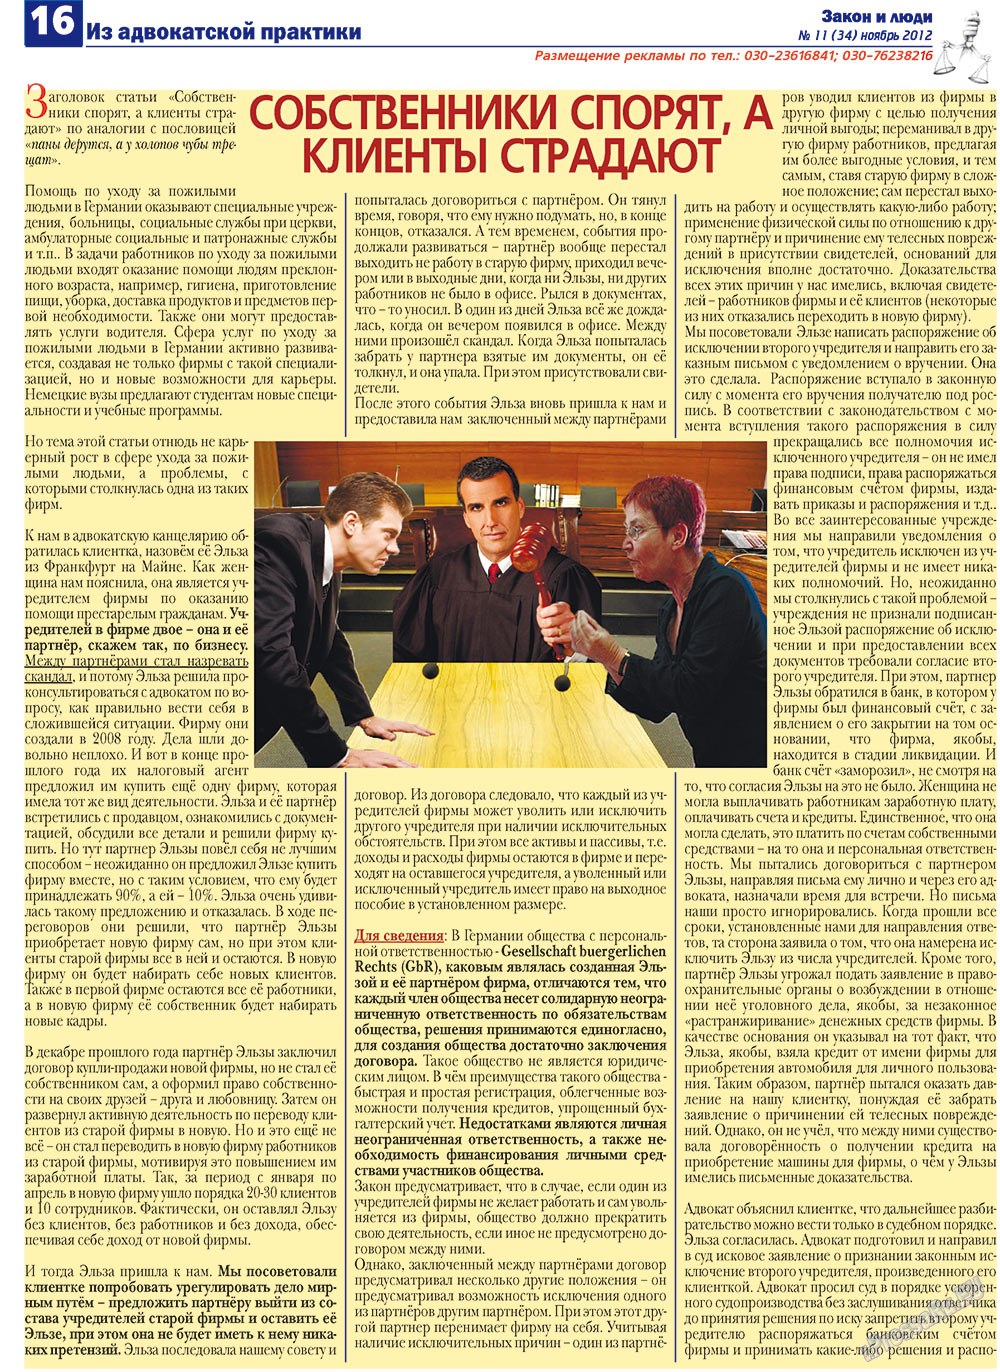 Закон и люди, газета. 2012 №11 стр.16